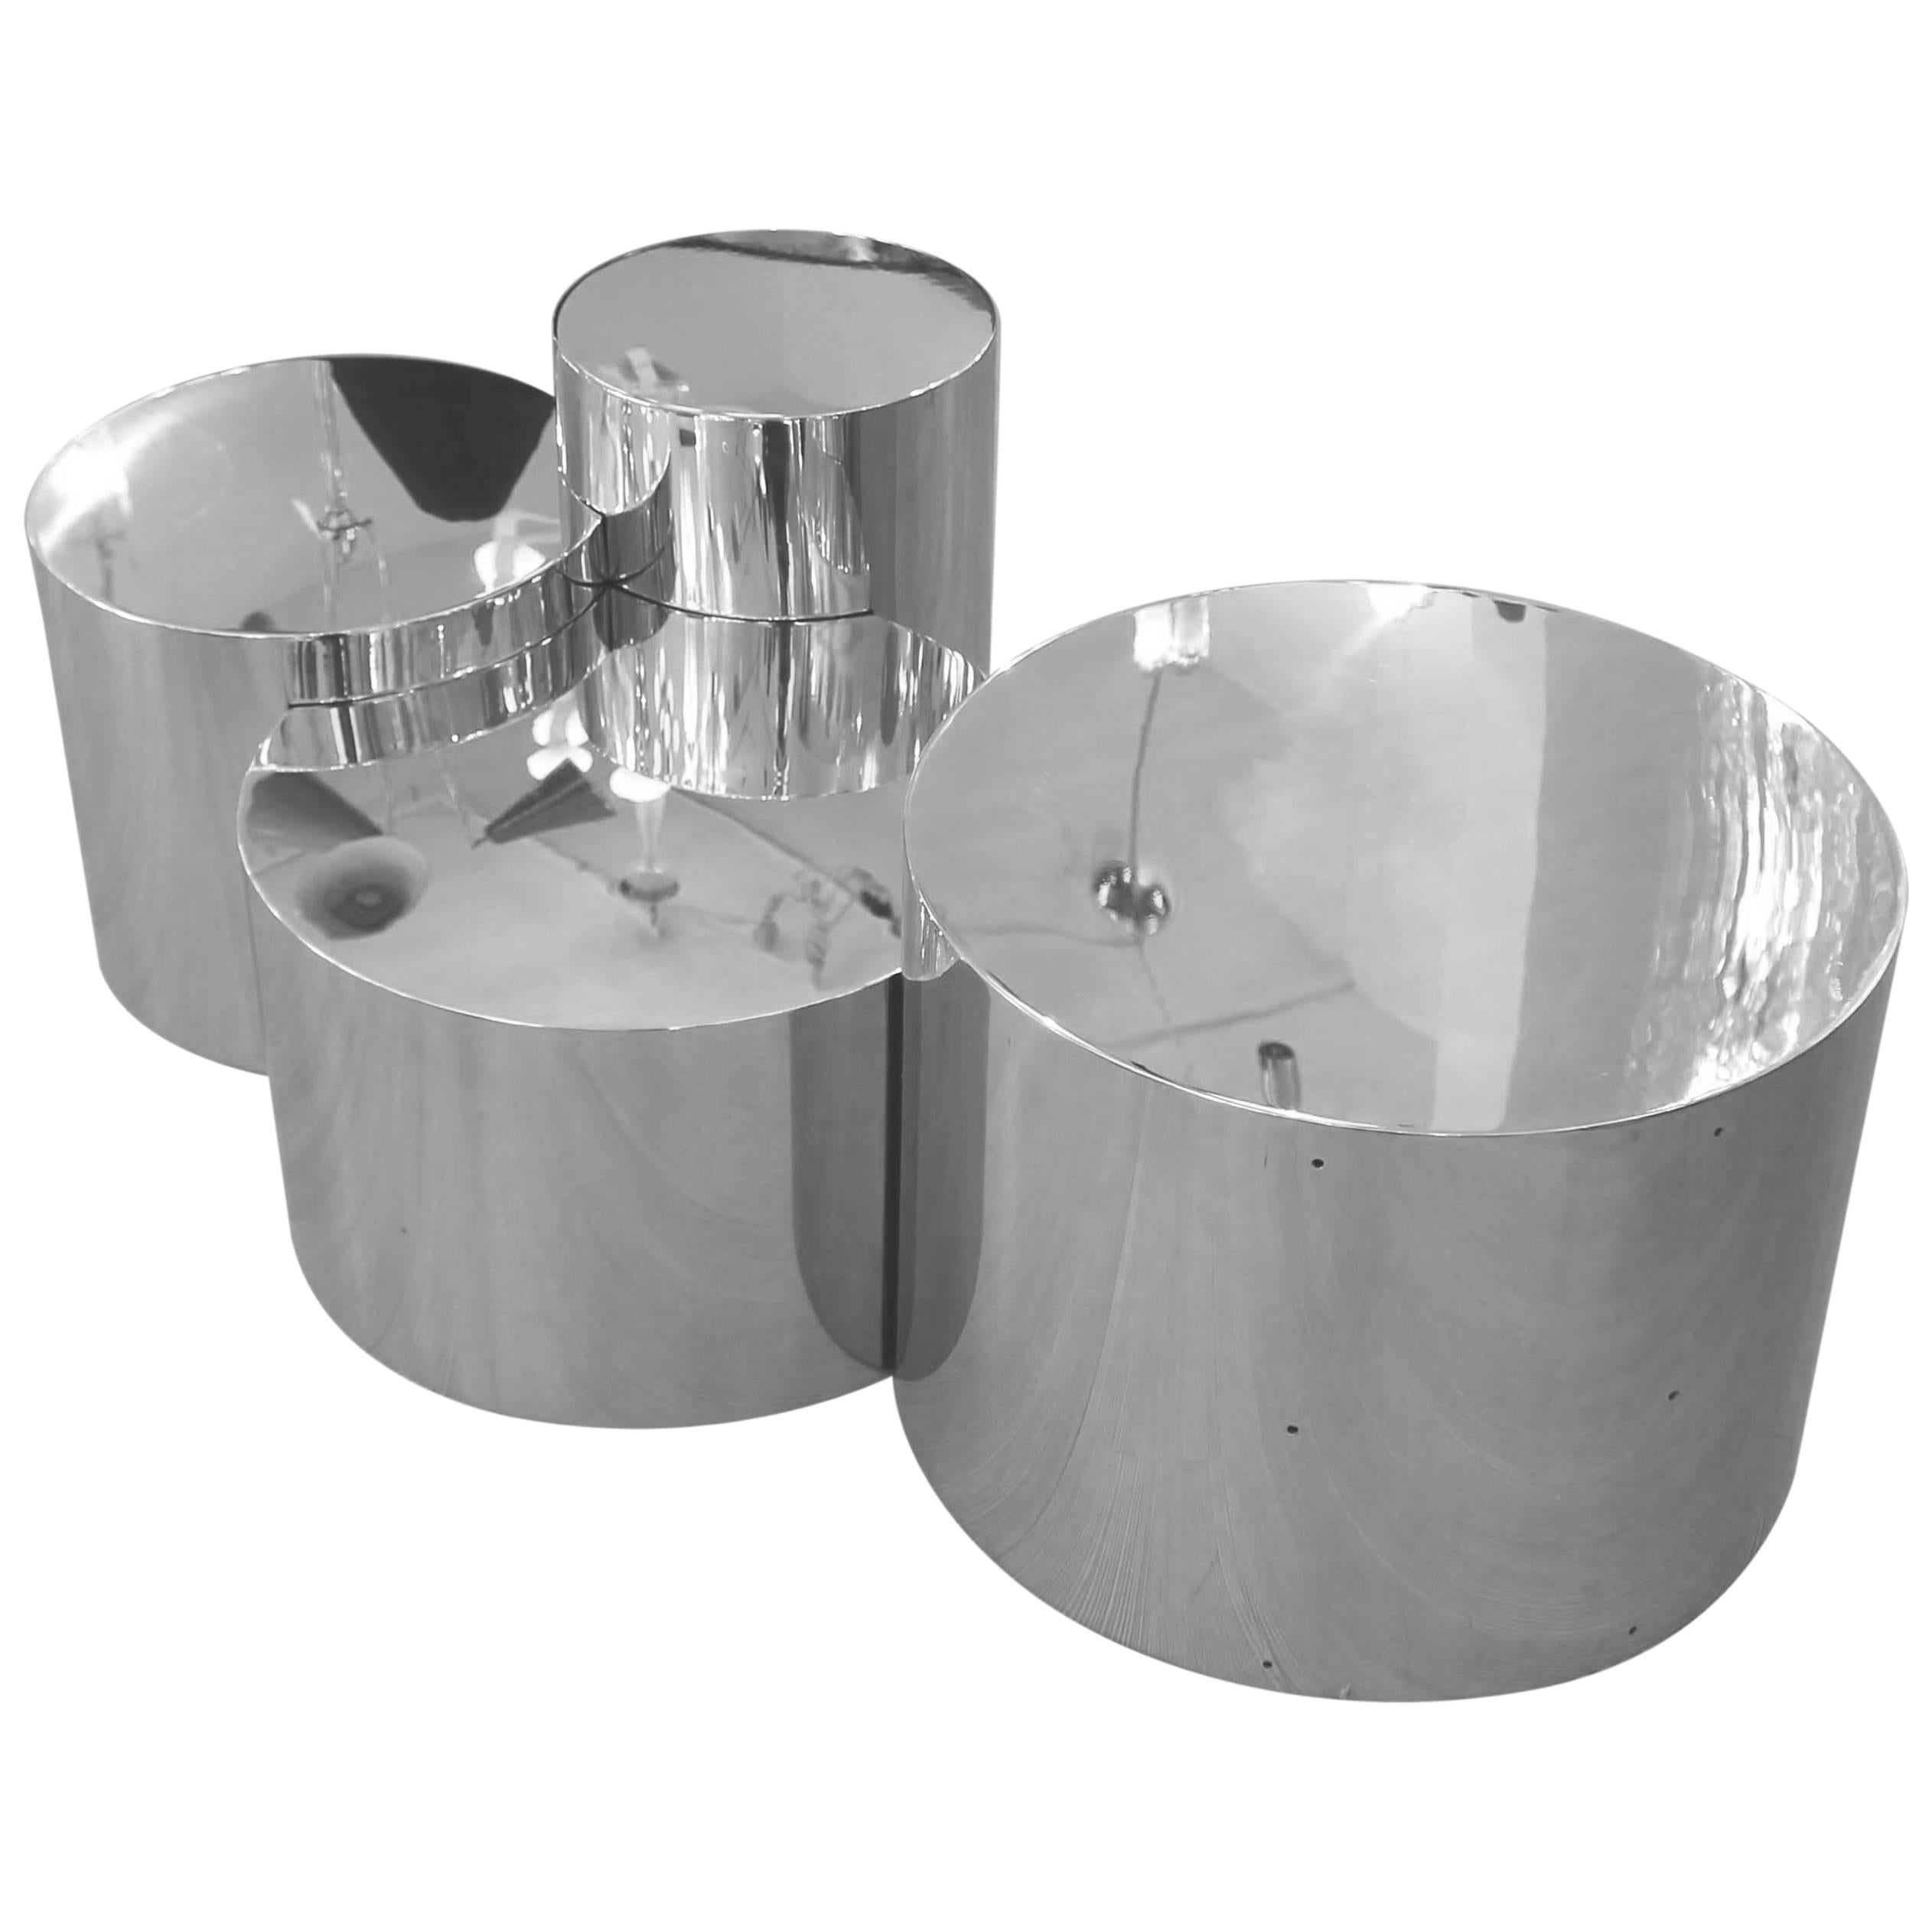 La table Geometria : Cerchi #4 élève la forme minimaliste du cylindre en les joignant et en les superposant pour créer une pièce hautement sculpturale. Représenté en acier poli avec quatre cylindres.

Options de personnalisation : 

Chaque pièce est